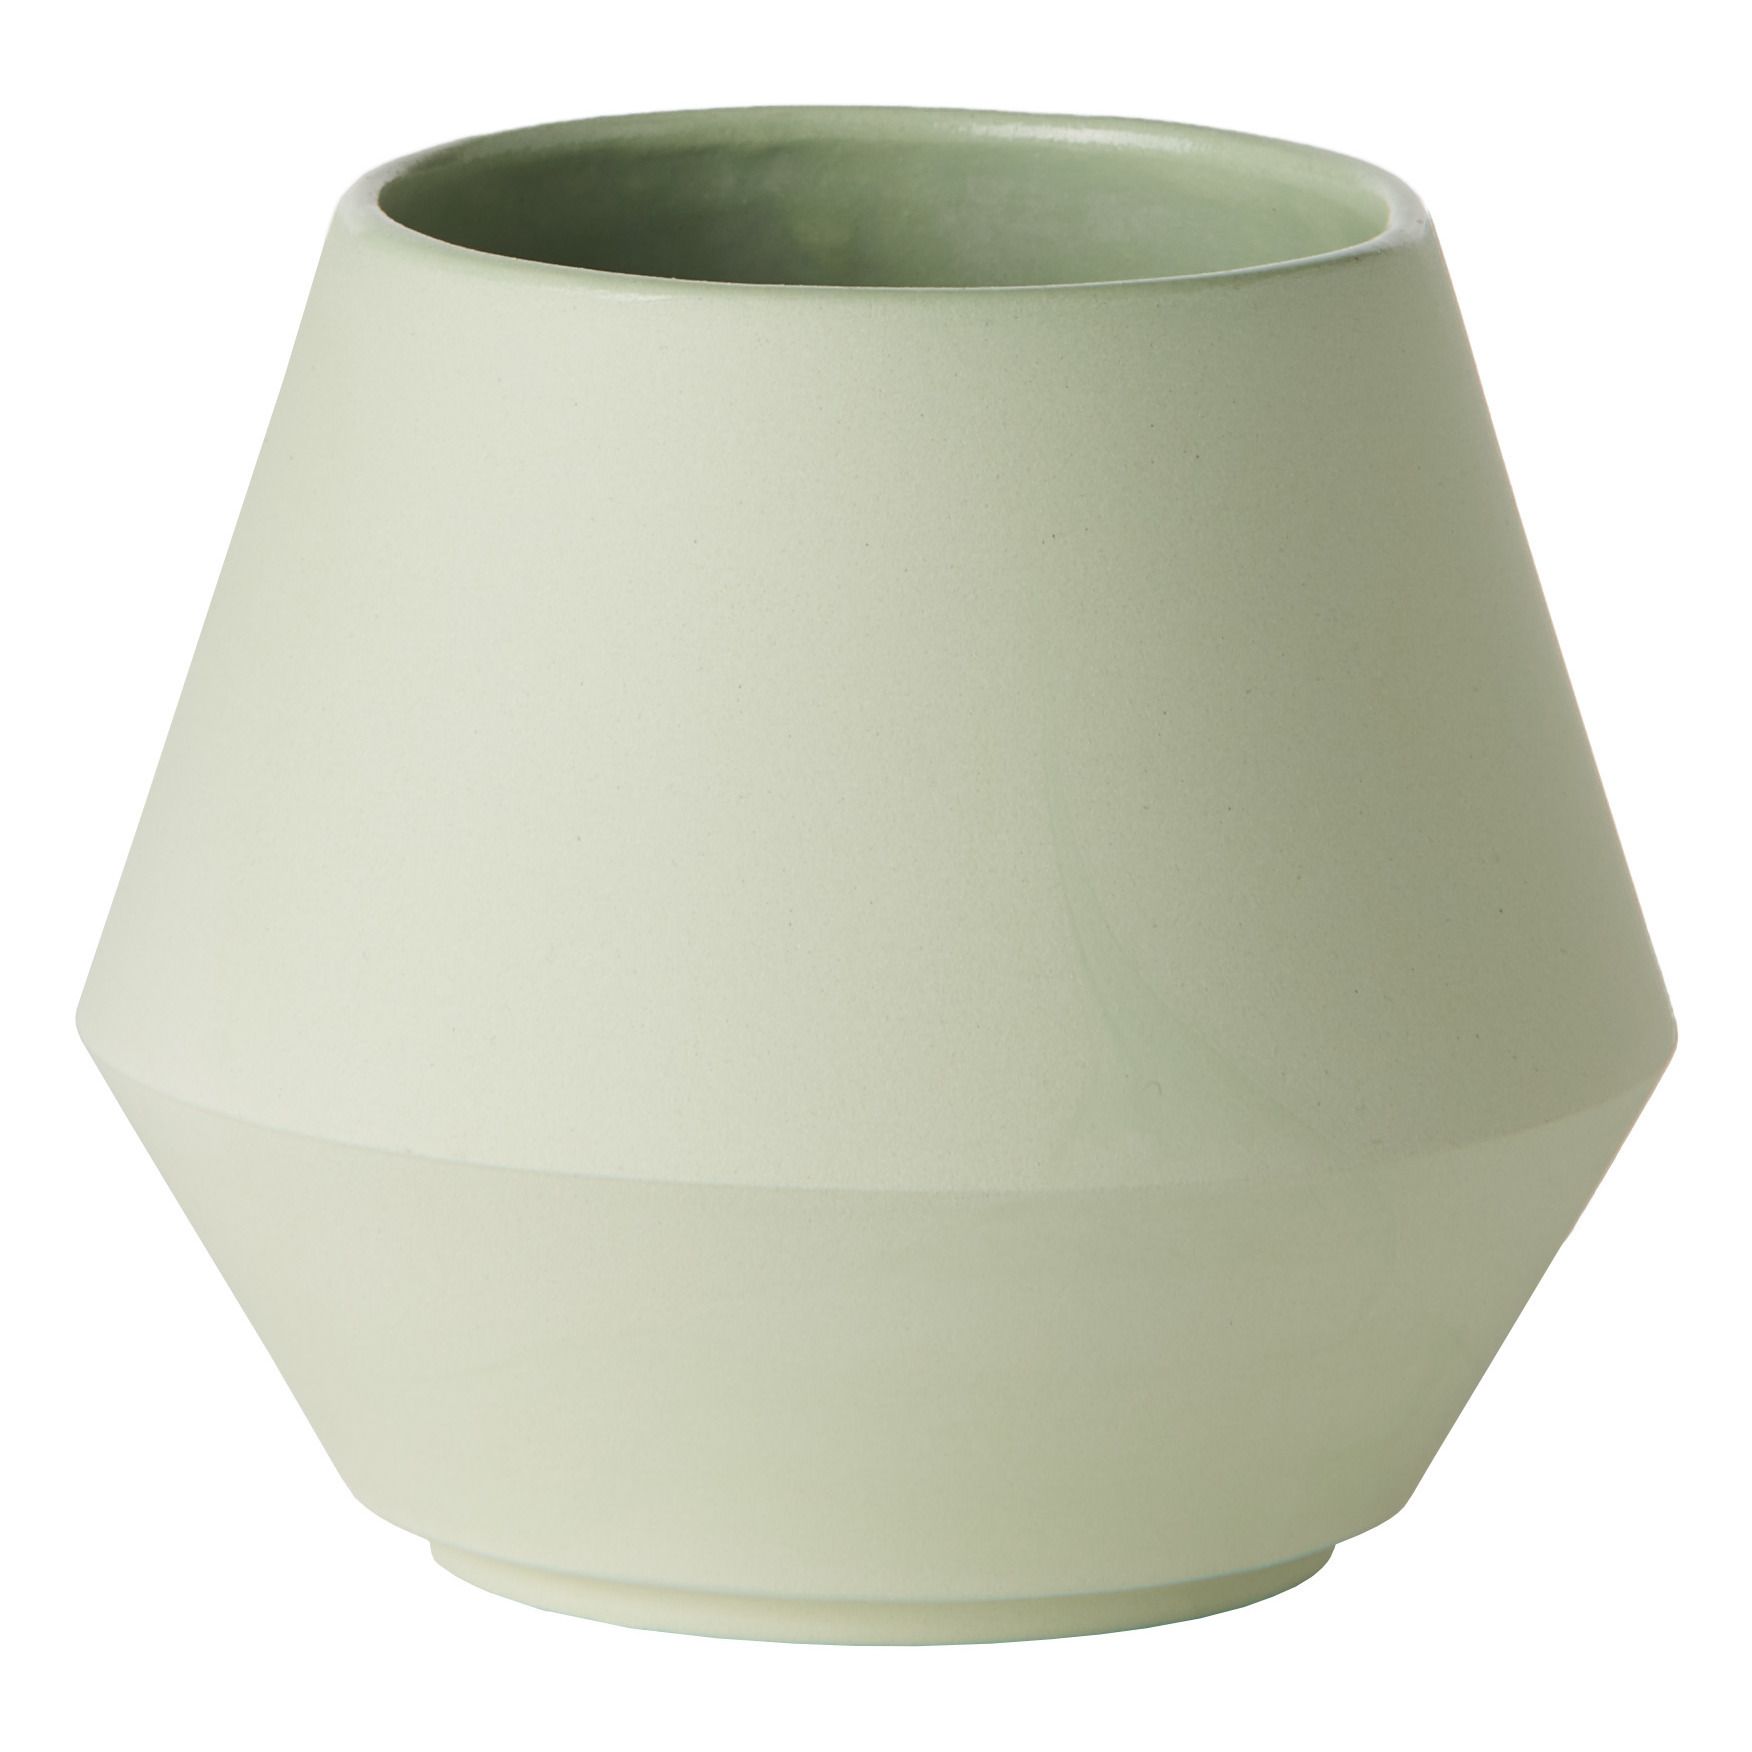 Schneid Studio - Petit bol en céramique Unisson avec couvercle - Vert pâle